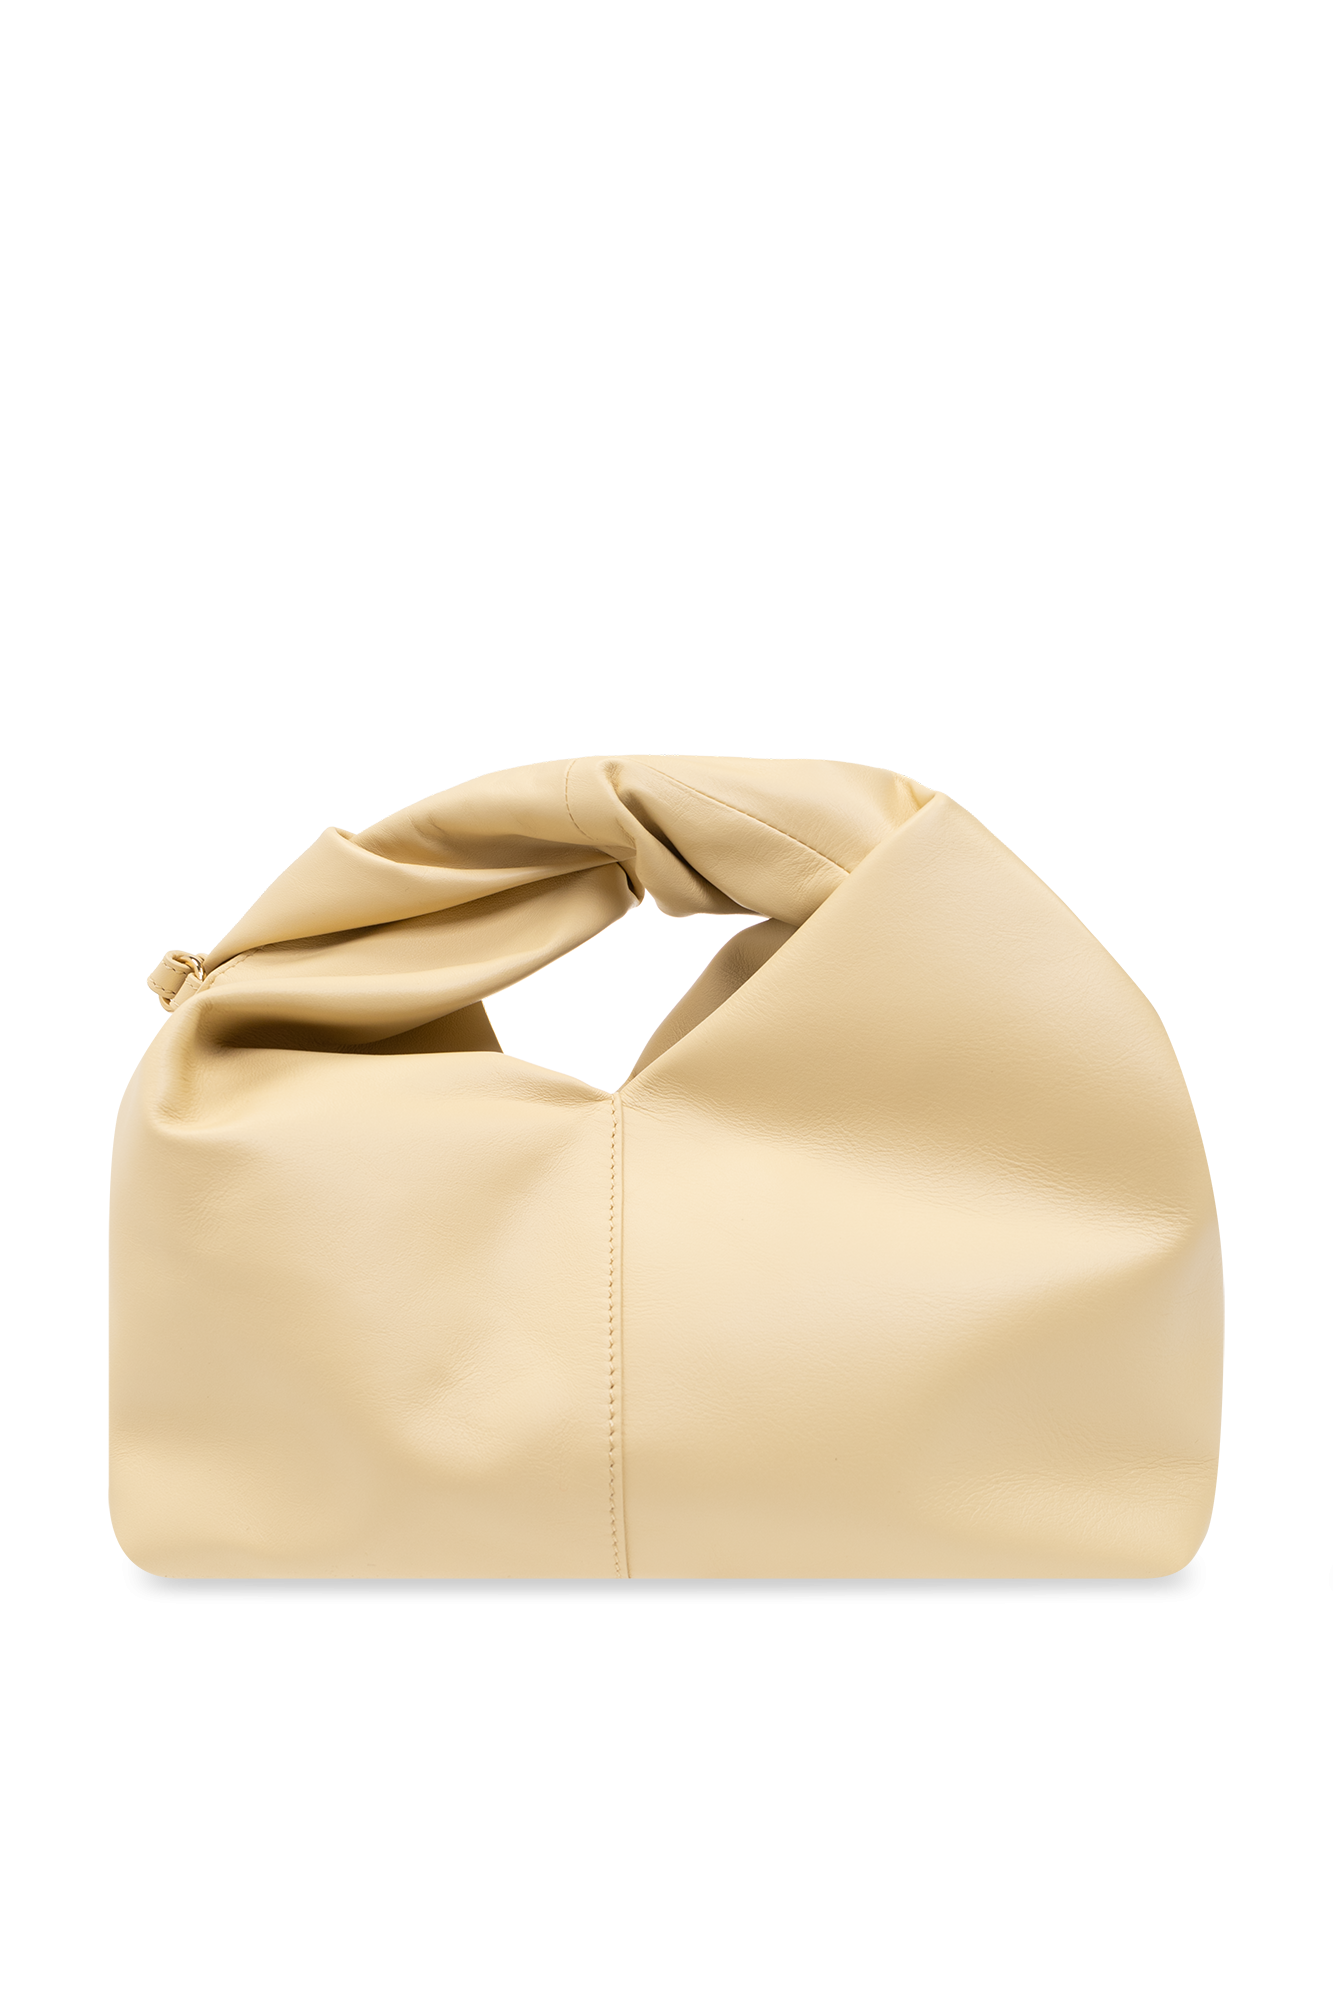 JW Anderson ‘Twister Hobo’ shoulder armani bag